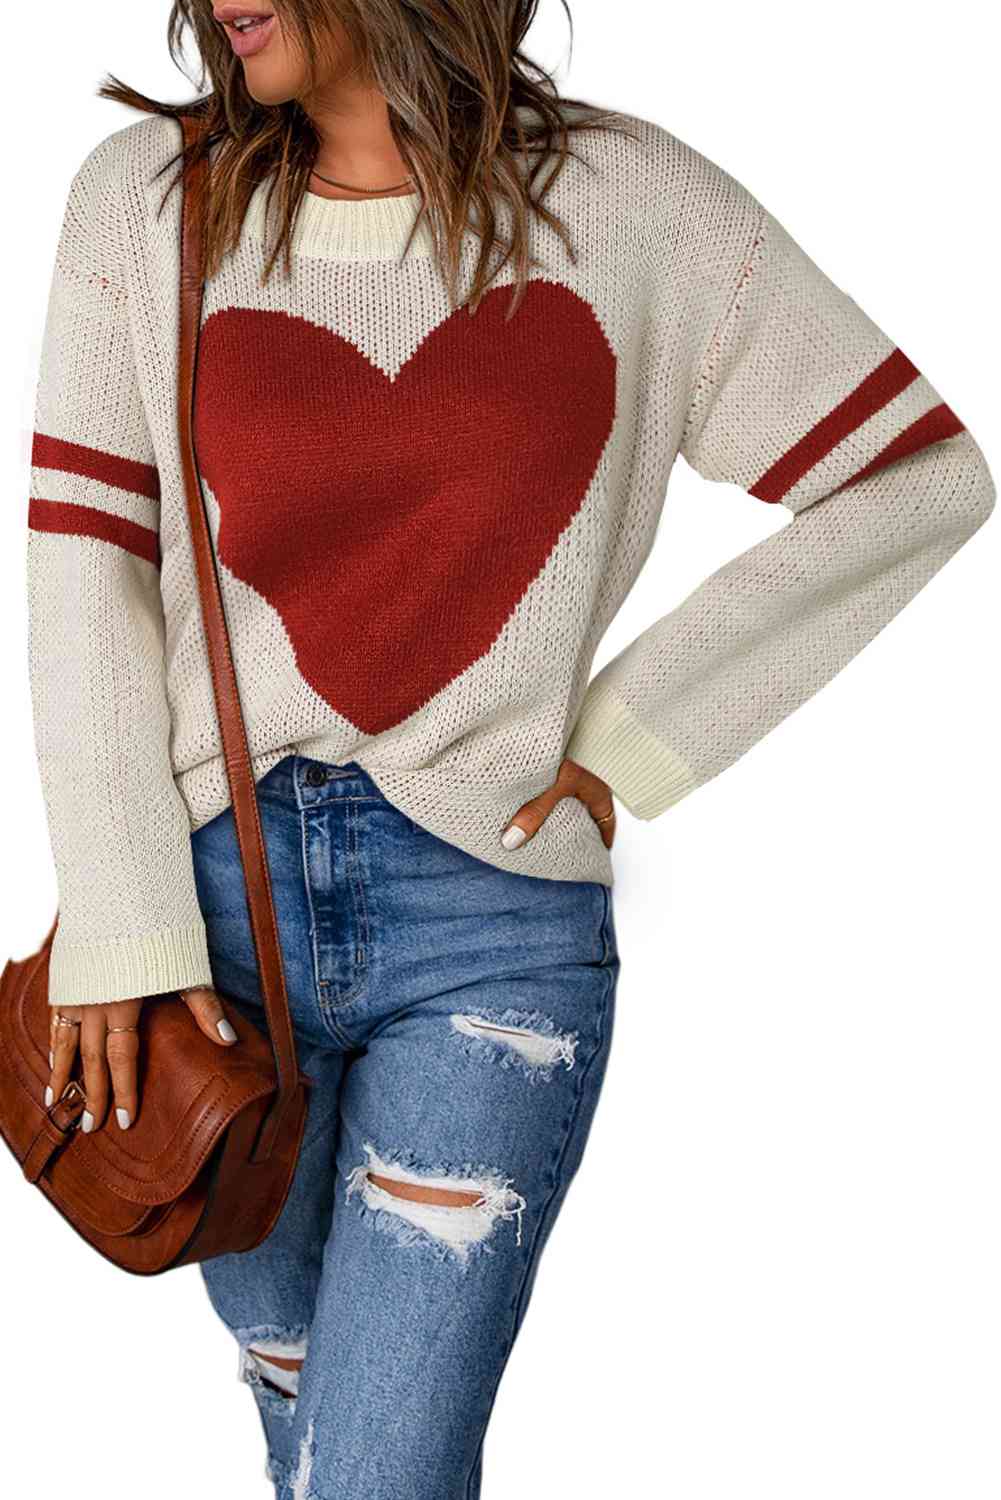 TEEK - Arm Stripe Heart Sweater SWEATER TEEK Trend Beige S 